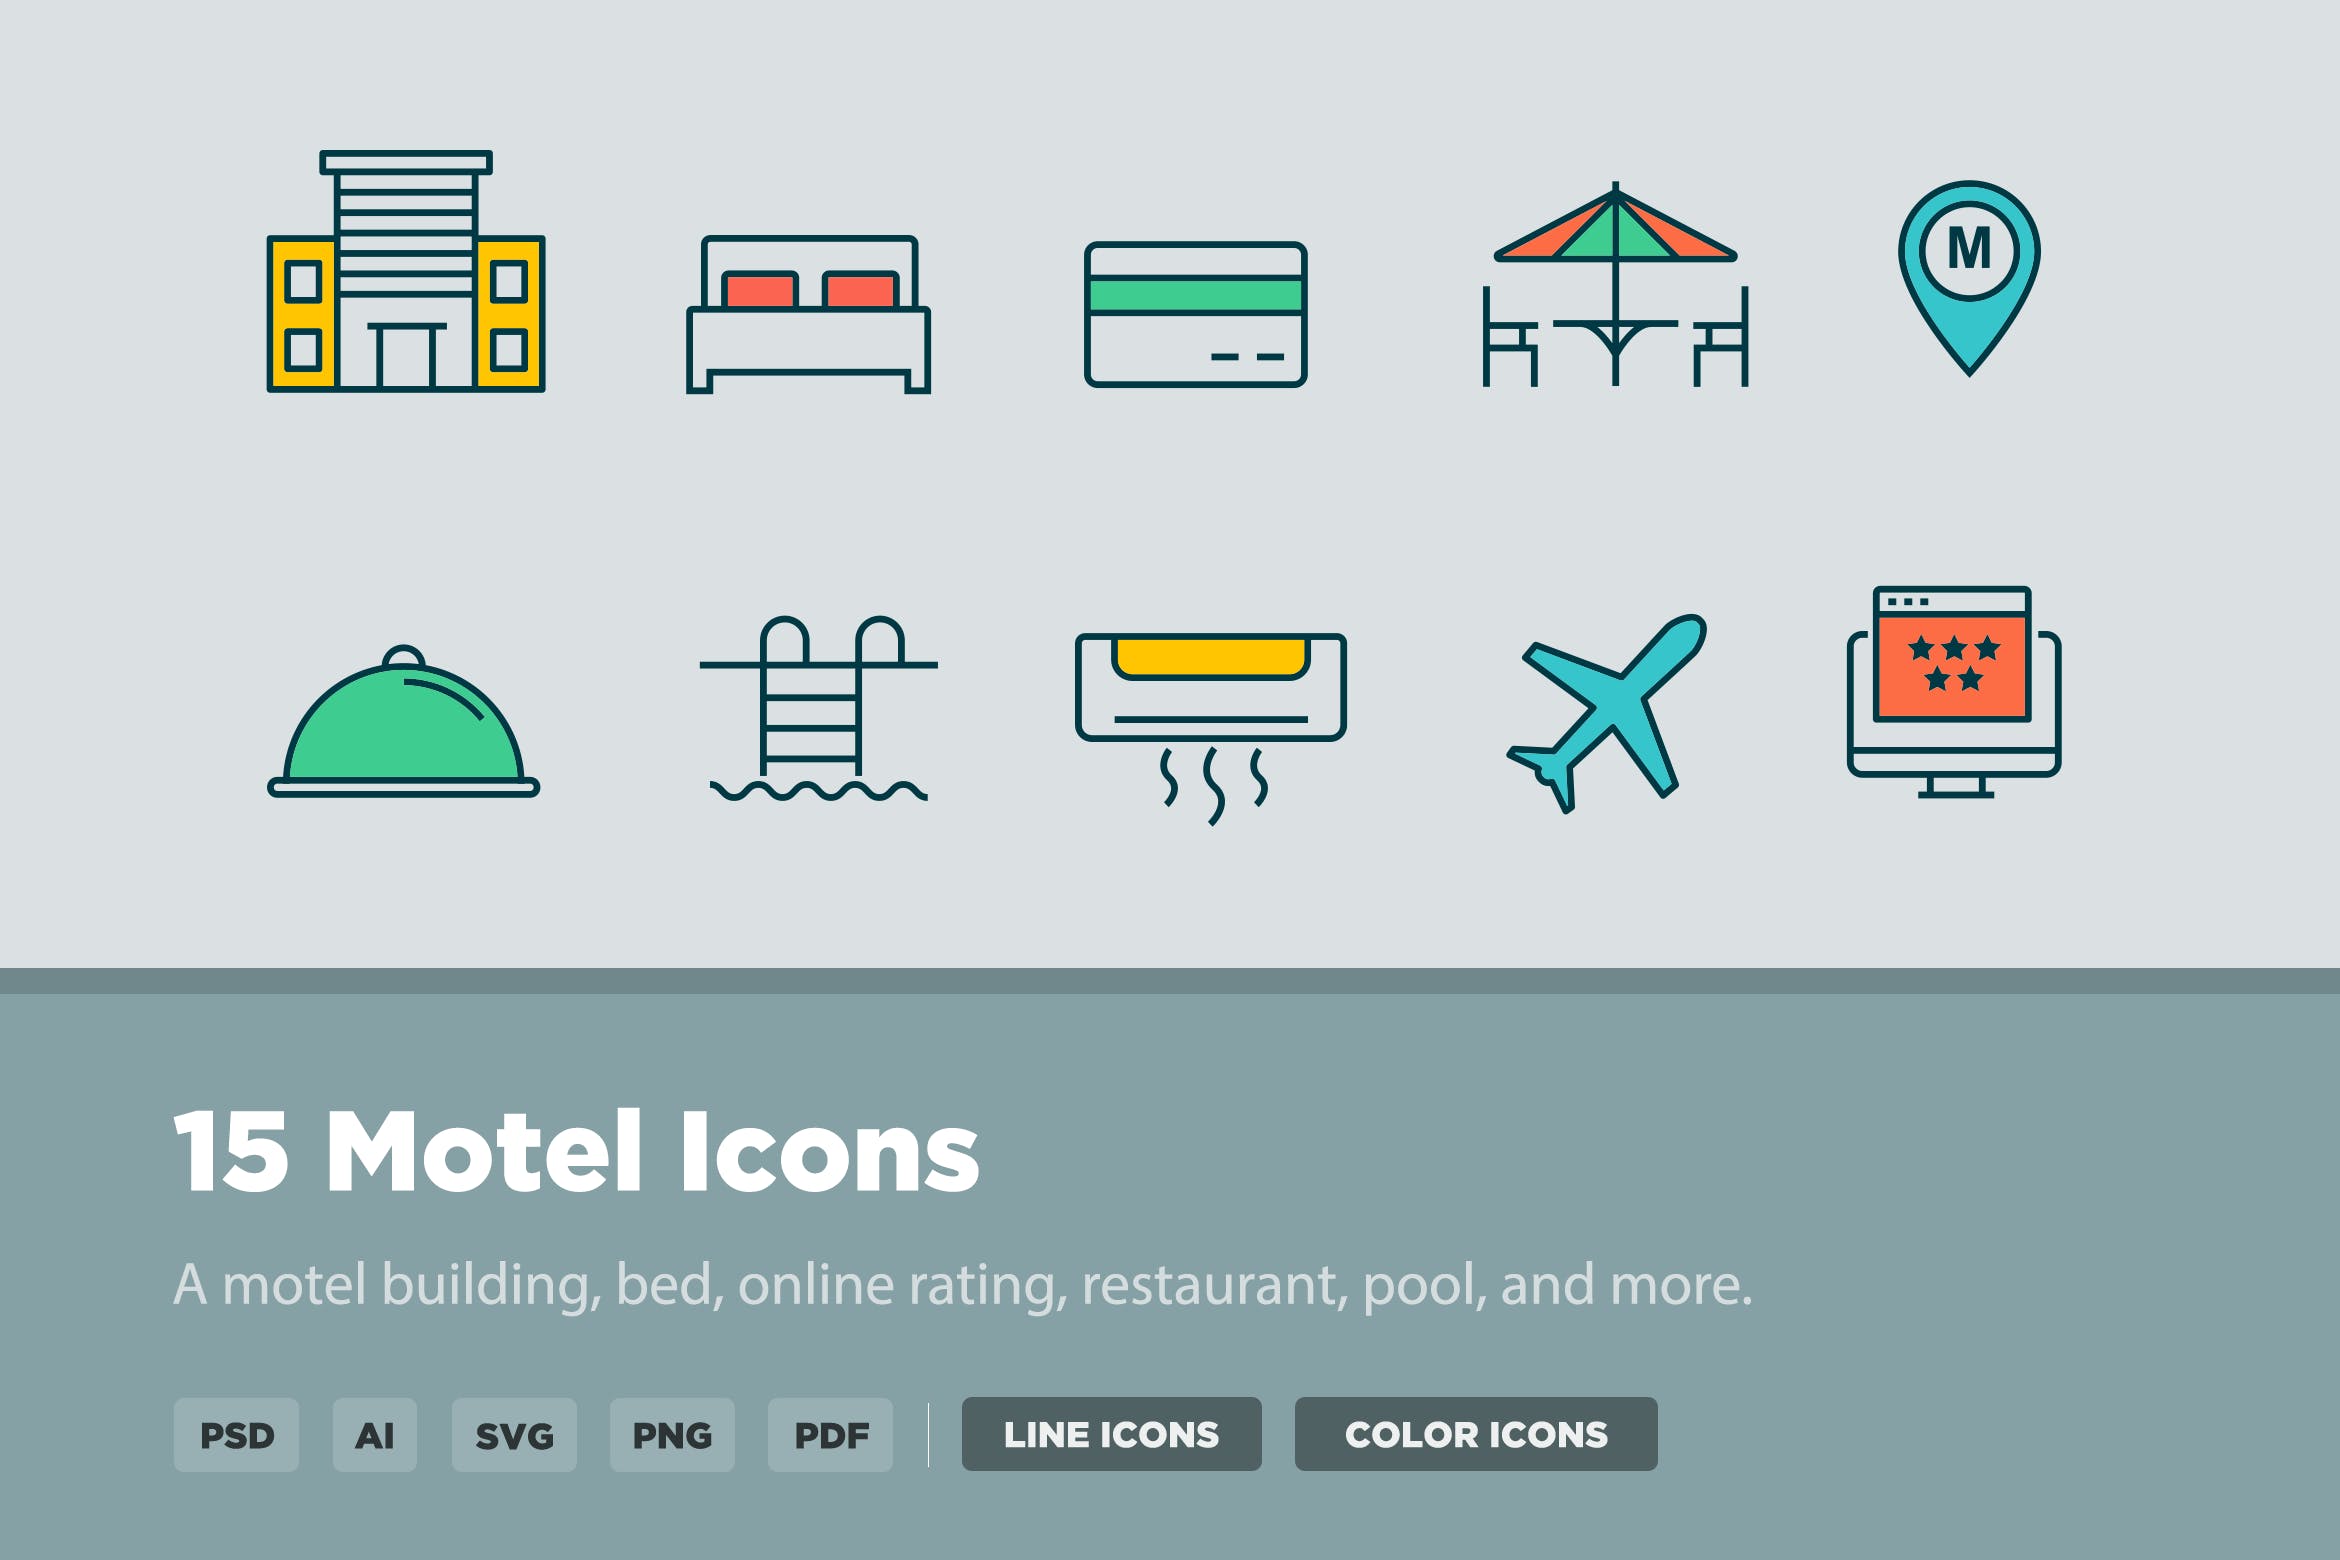 15枚汽车旅馆矢量图标素材 15 Motel Icons插图